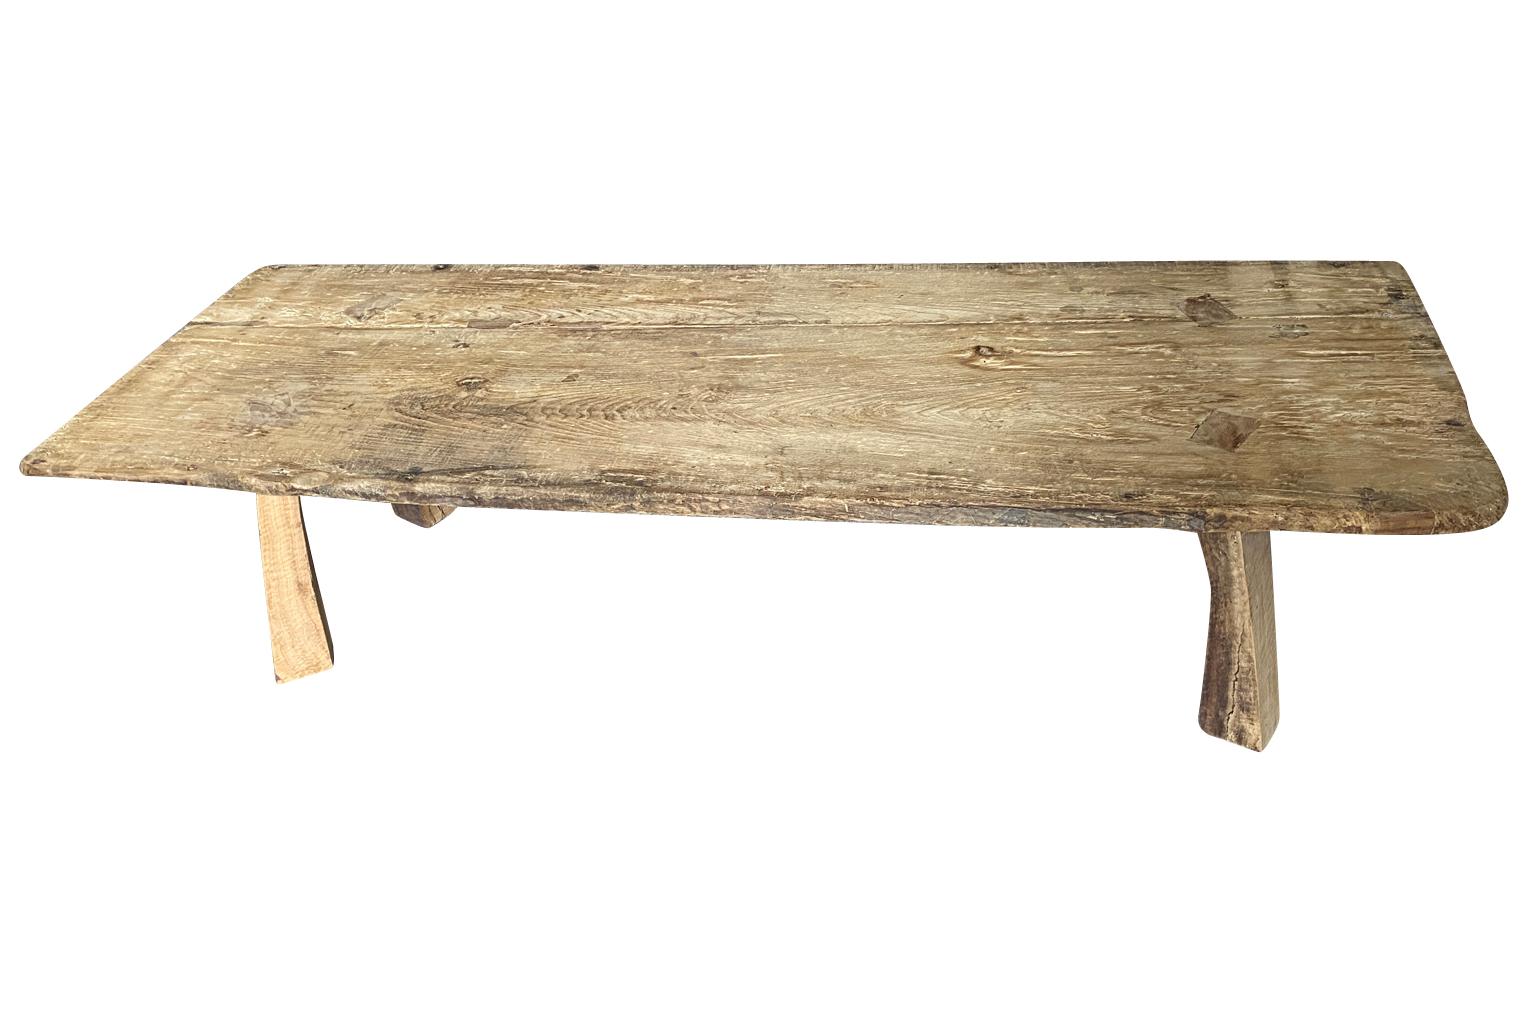 Une superbe Table Basse de la région catalane de l'Espagne.  Construit en bois de châtaignier avec un plateau en bois massif.  Merveilleuse patine et grainage.